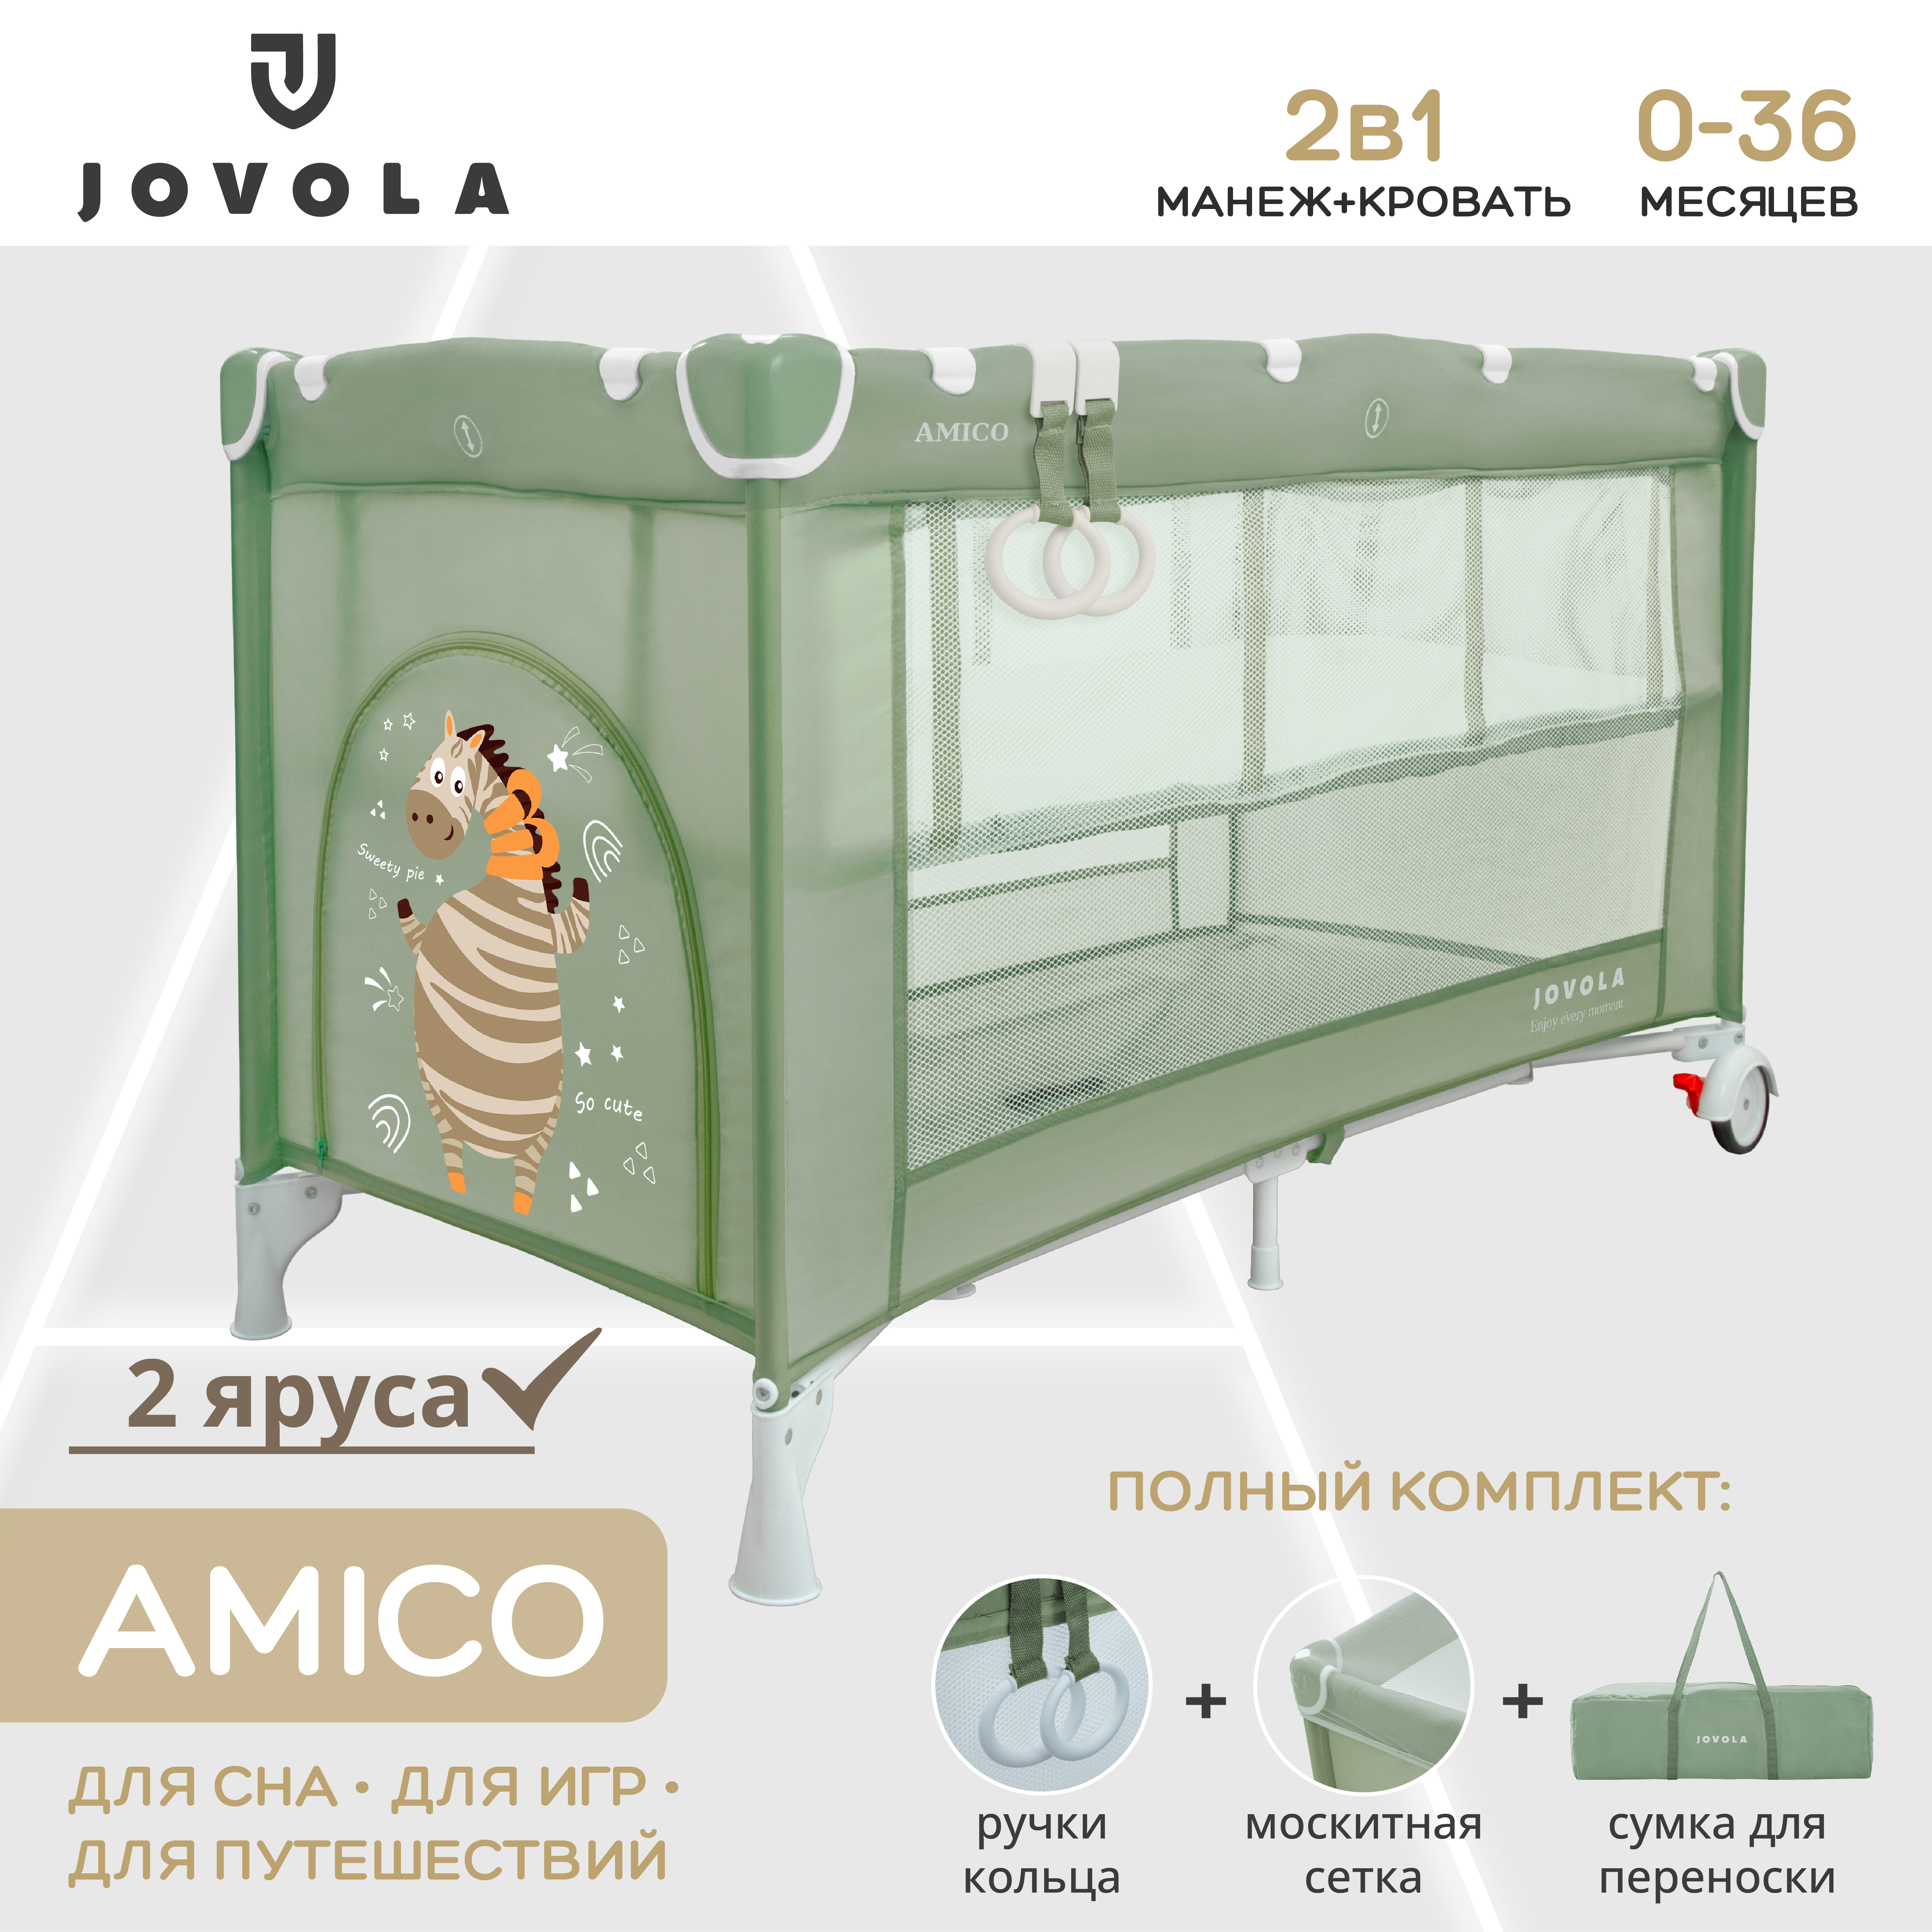 Манеж-кровать JOVOLA AMICO 2 уровня москитная сетка 2 кольца зеленый 4657792380429 - фото 1